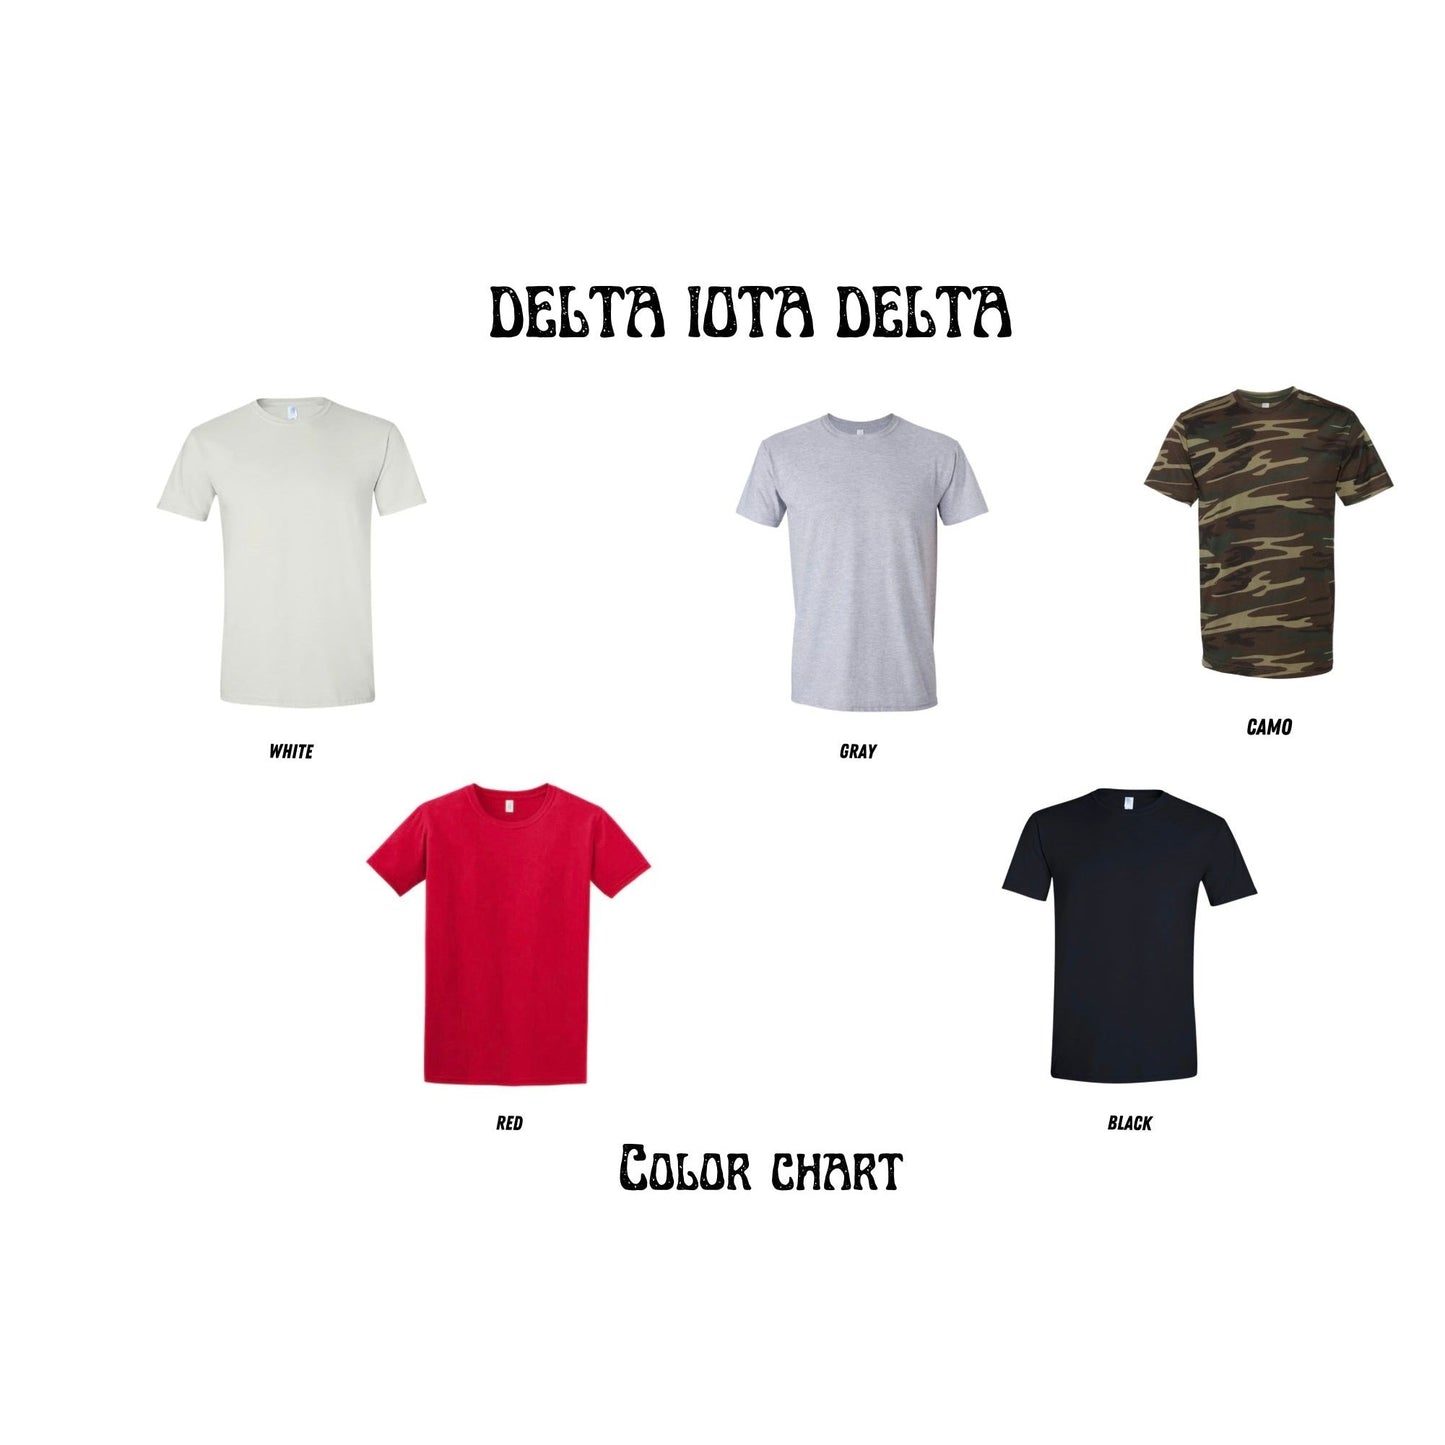 Delta Iota Delta Nutrition Facts T-shirt